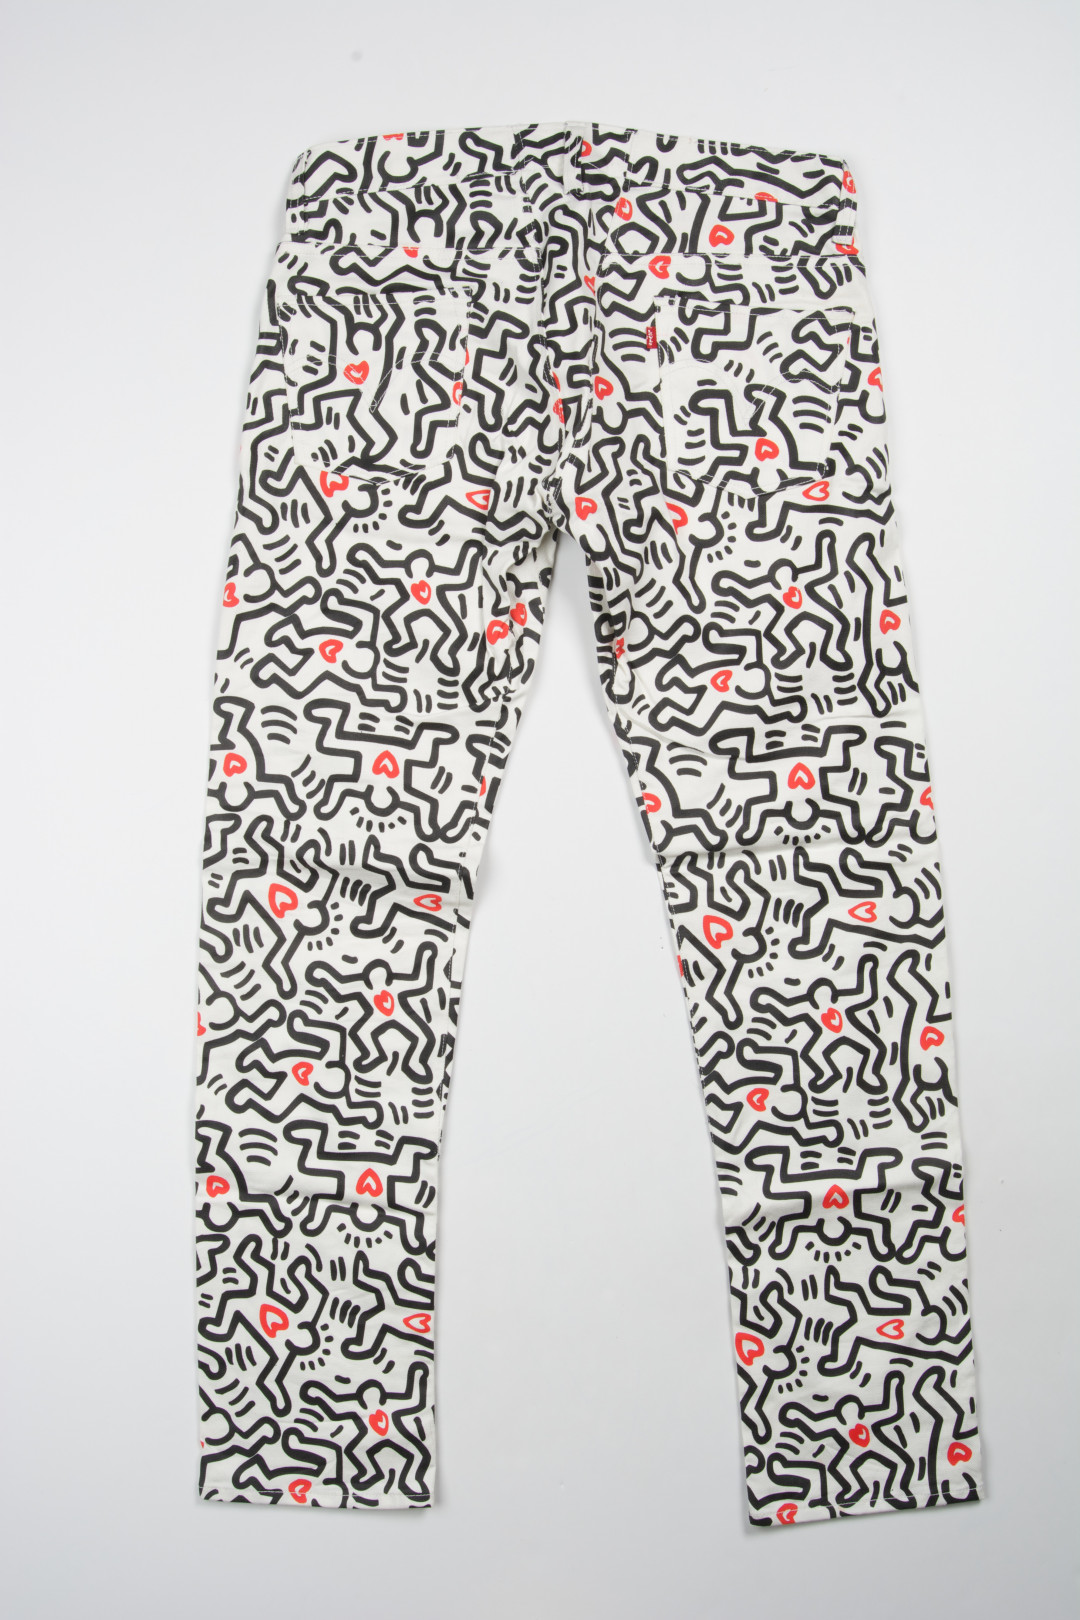 Keith Haring Print 501®, 2008